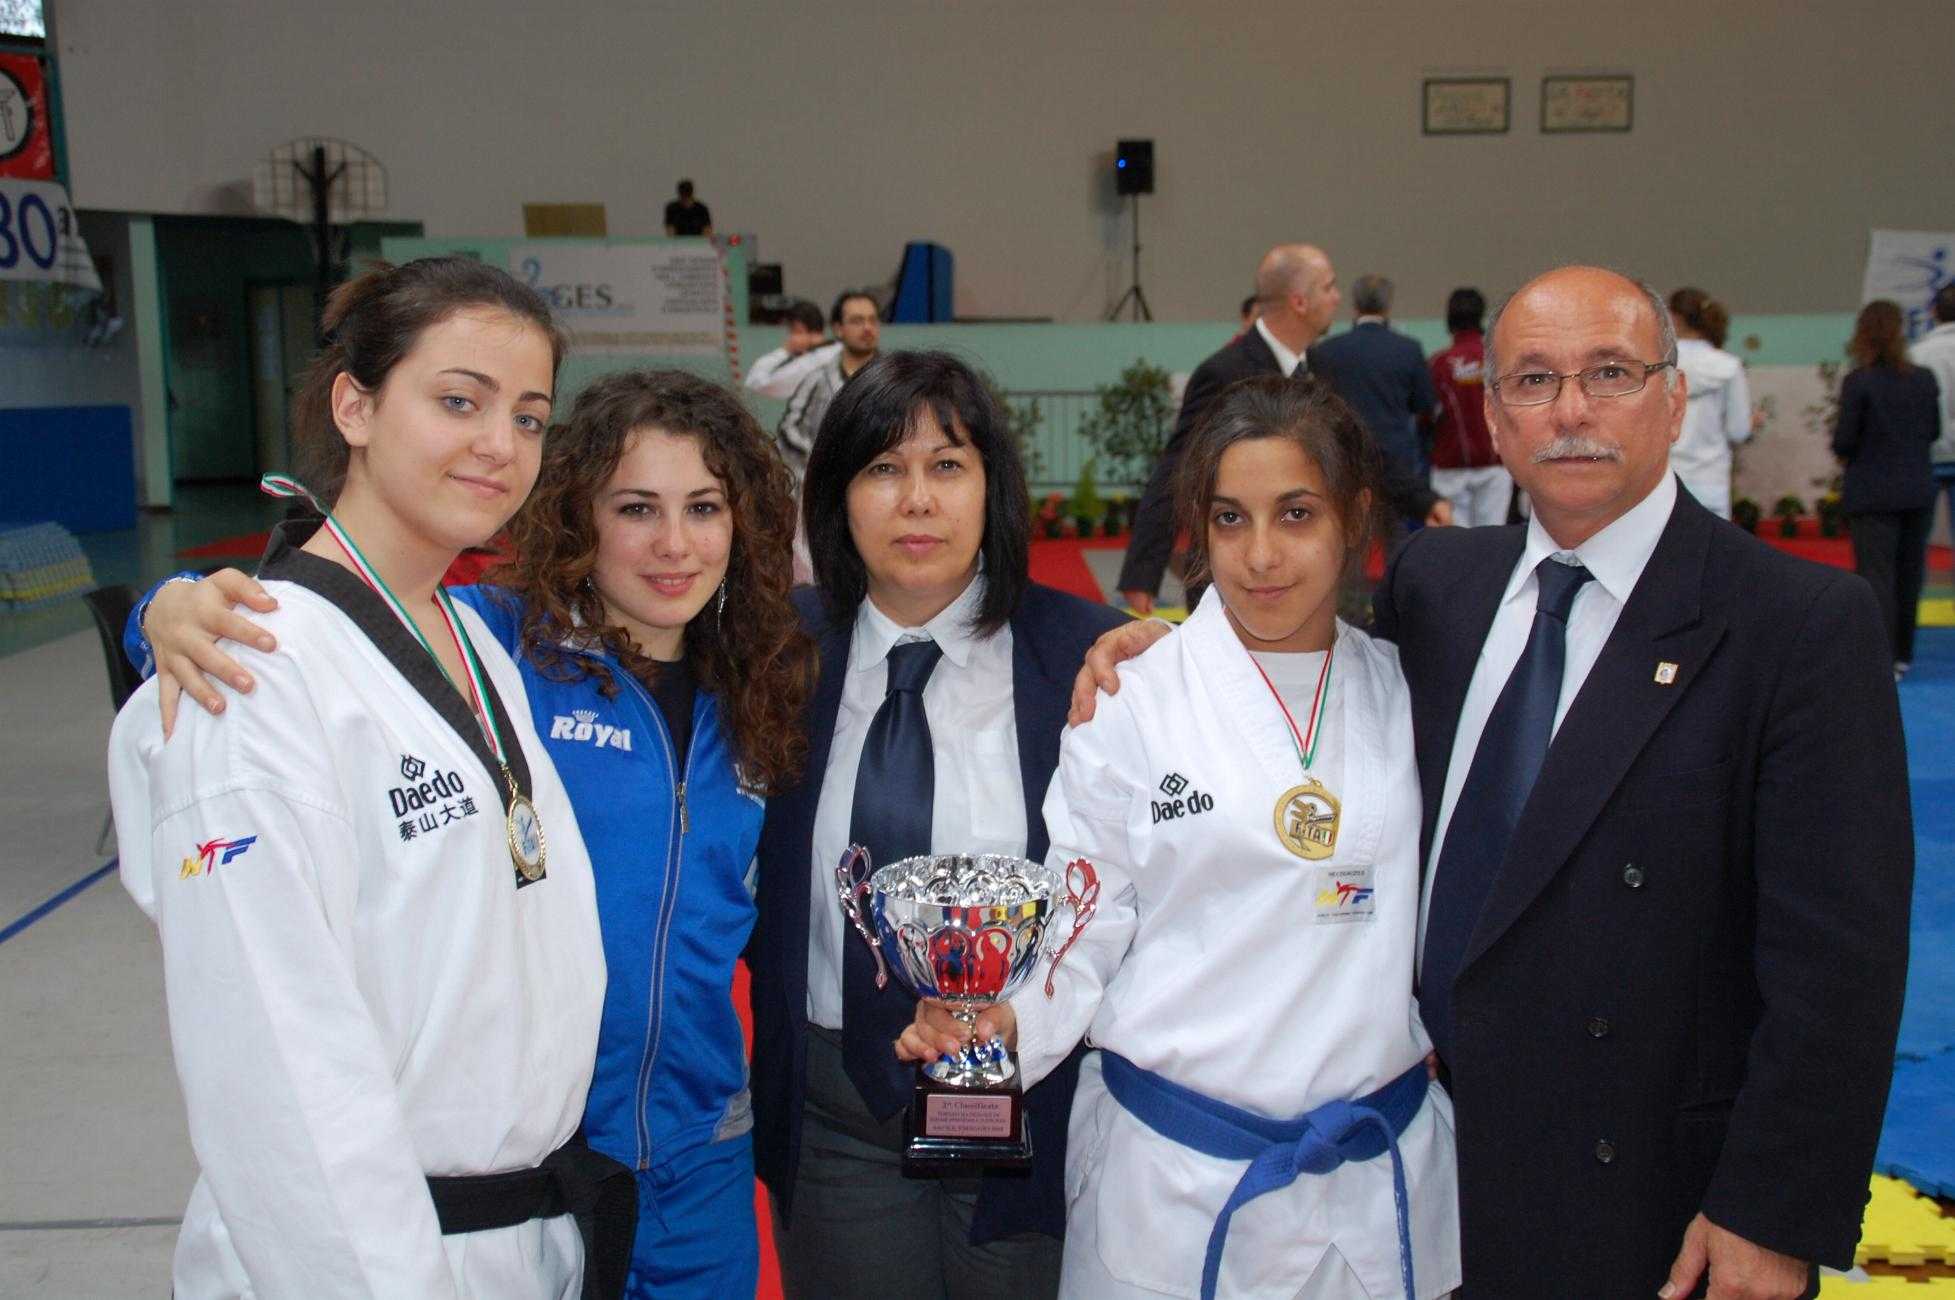 Le giovani Fiorella Costanzo e Lucia Longo, medaglia d'oro